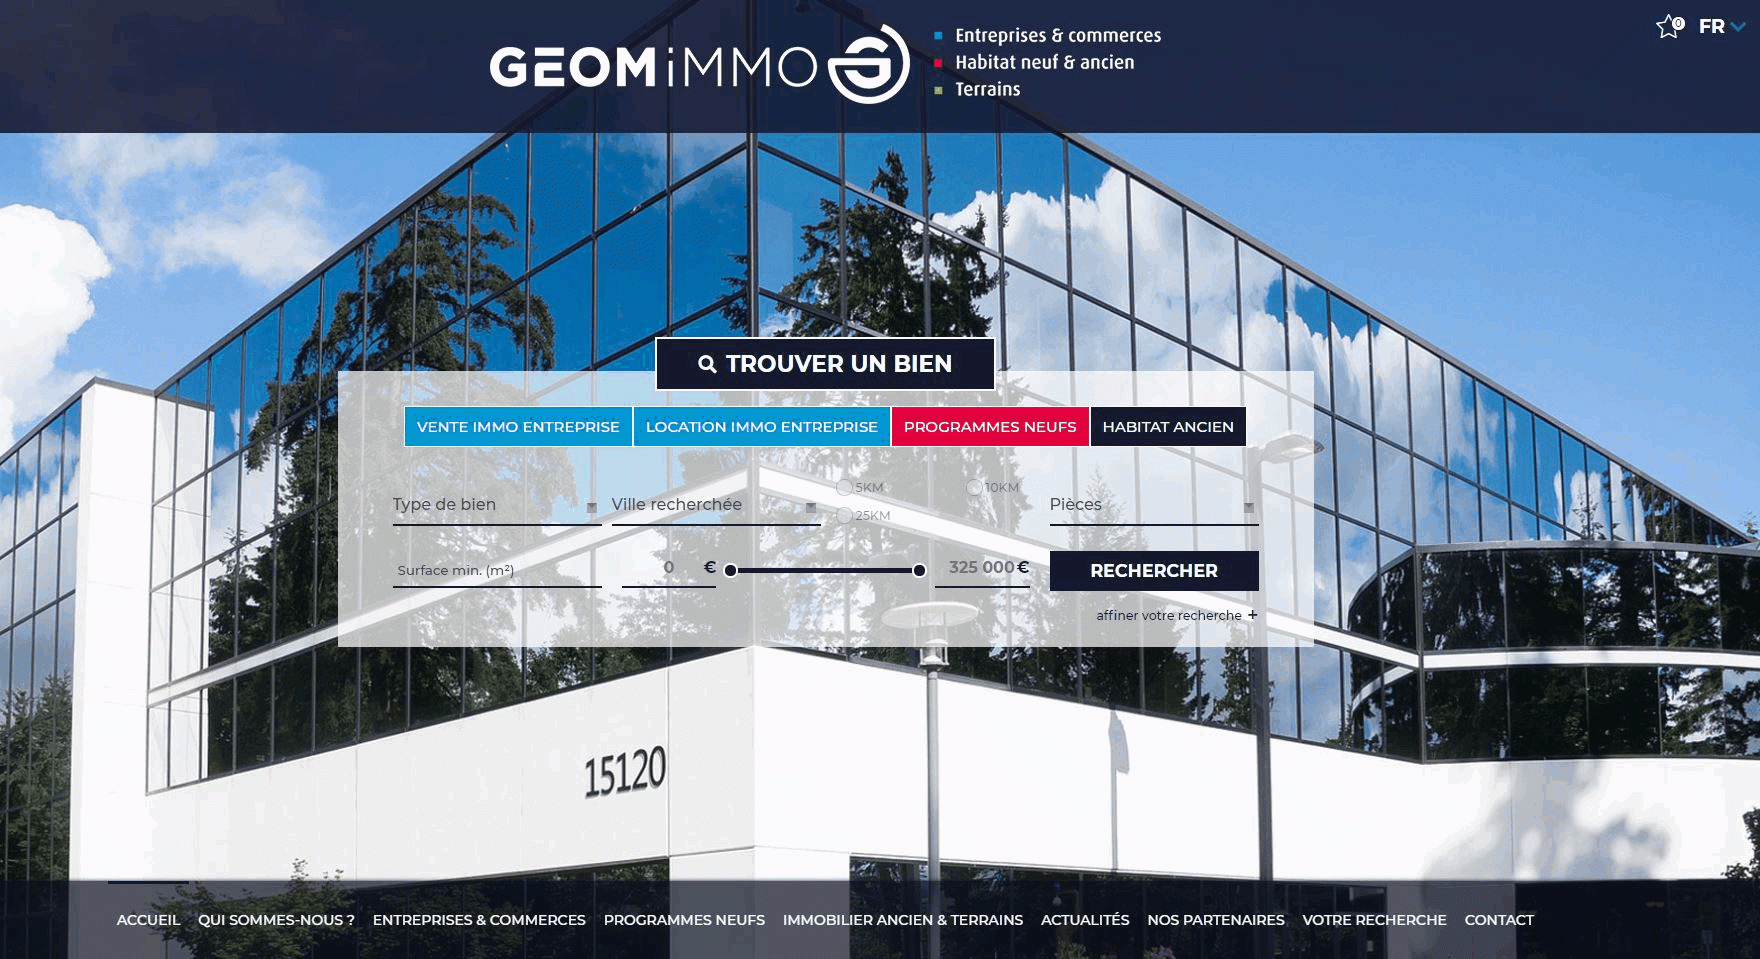 Notre site GEOMiMMO.fr est en ligne!